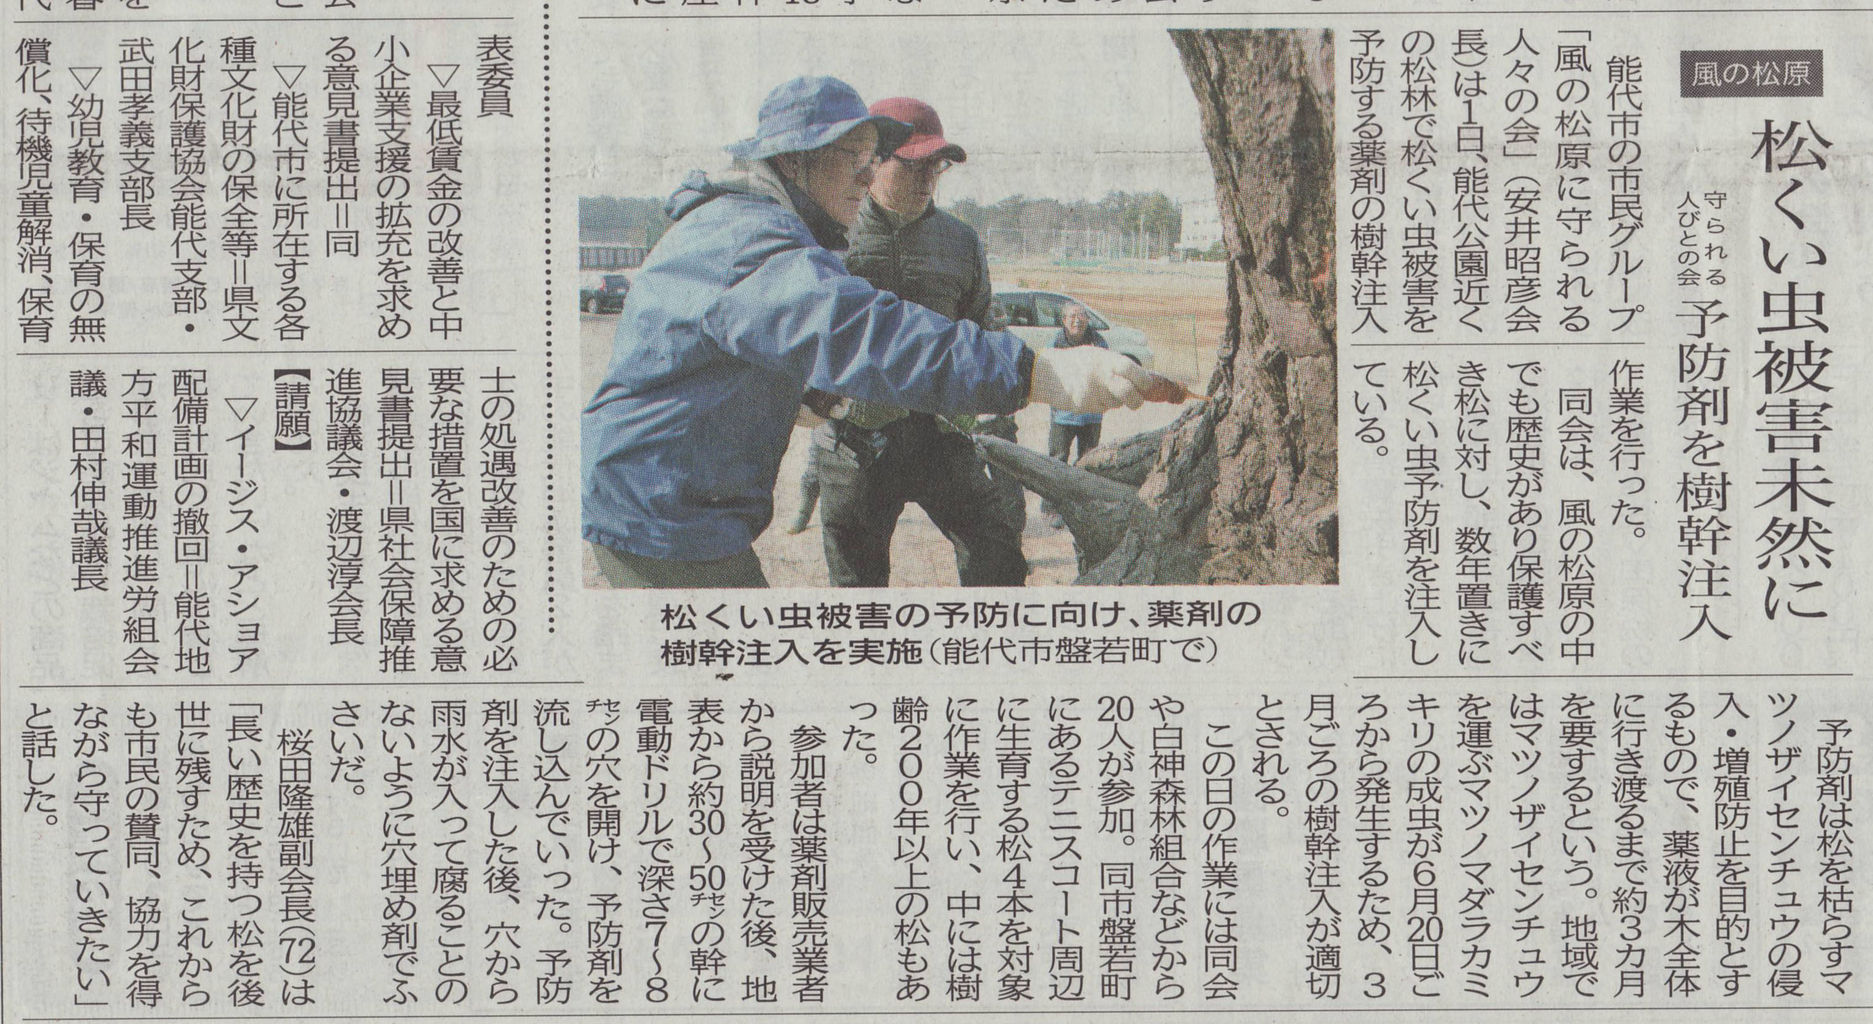 樹幹注入の北羽新報記事 新 風の松原を歩く